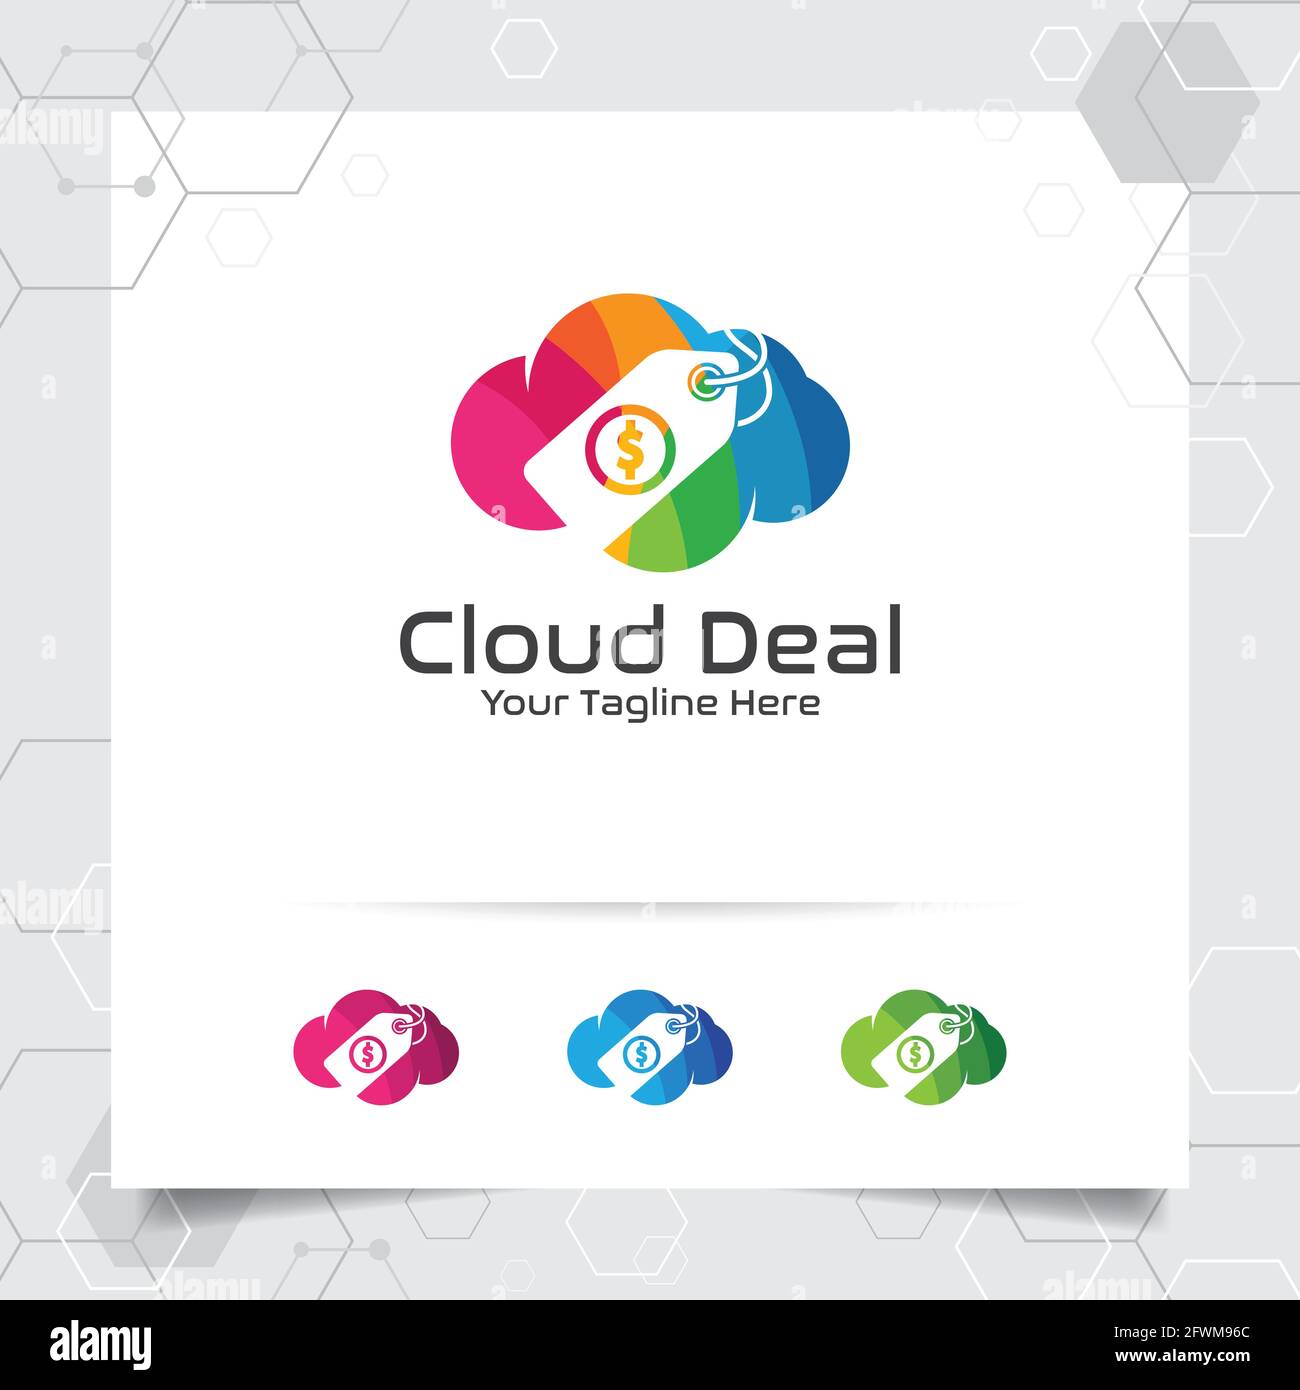 Buntes Cloud-Logo-Vektor-Design mit Konzept der Online-Shop-Illustration. Symbolvektor für Cloud und Preisschild für Unternehmen, Geschäfte, digitale Online-Shops. Stock Vektor